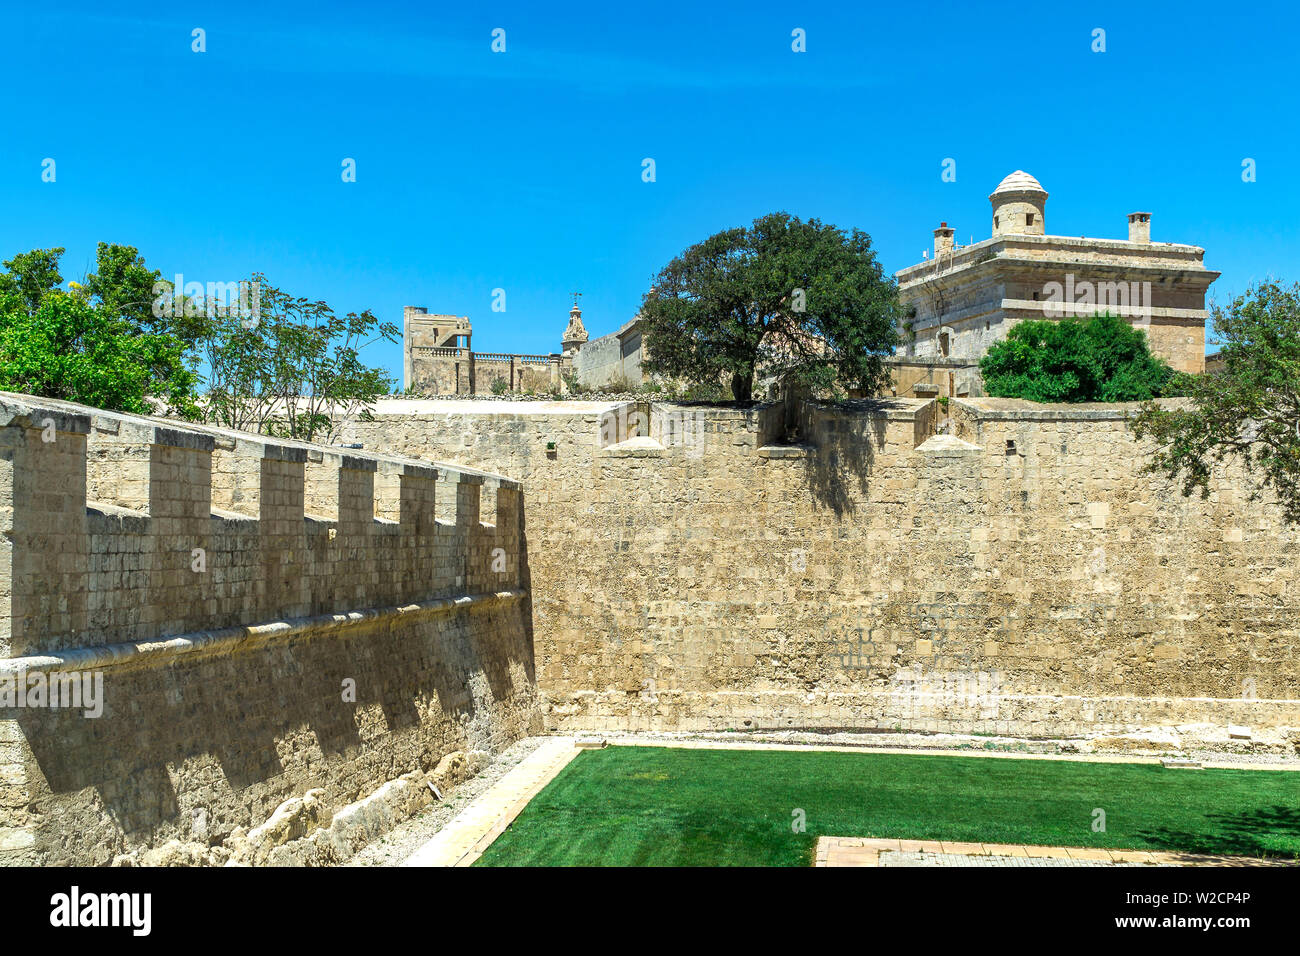 Profonda fossa e mura protettive che circondano la cittadella di Mdina, conosciuta come la Città silenziosa - Malta. Foto Stock